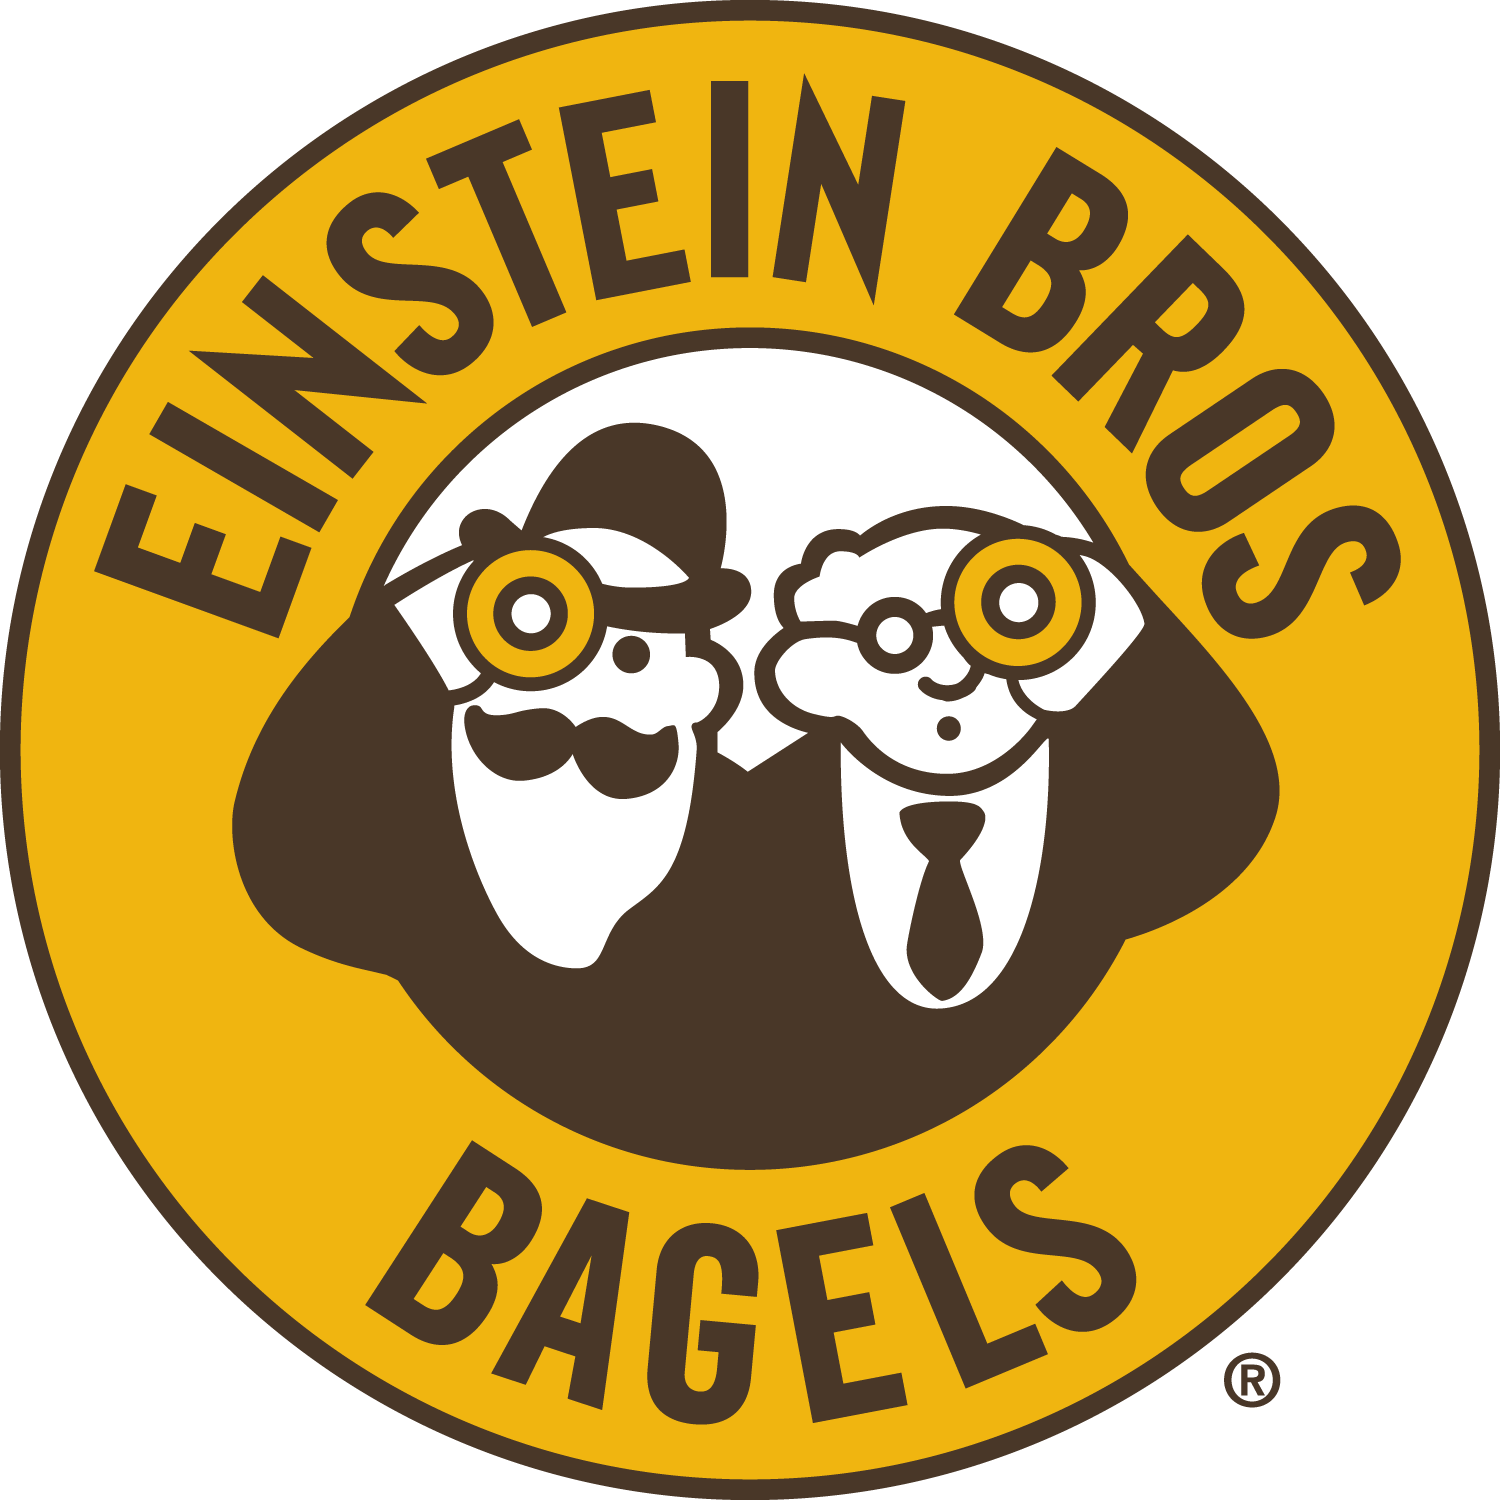 logo of Einstein Bros Bagels